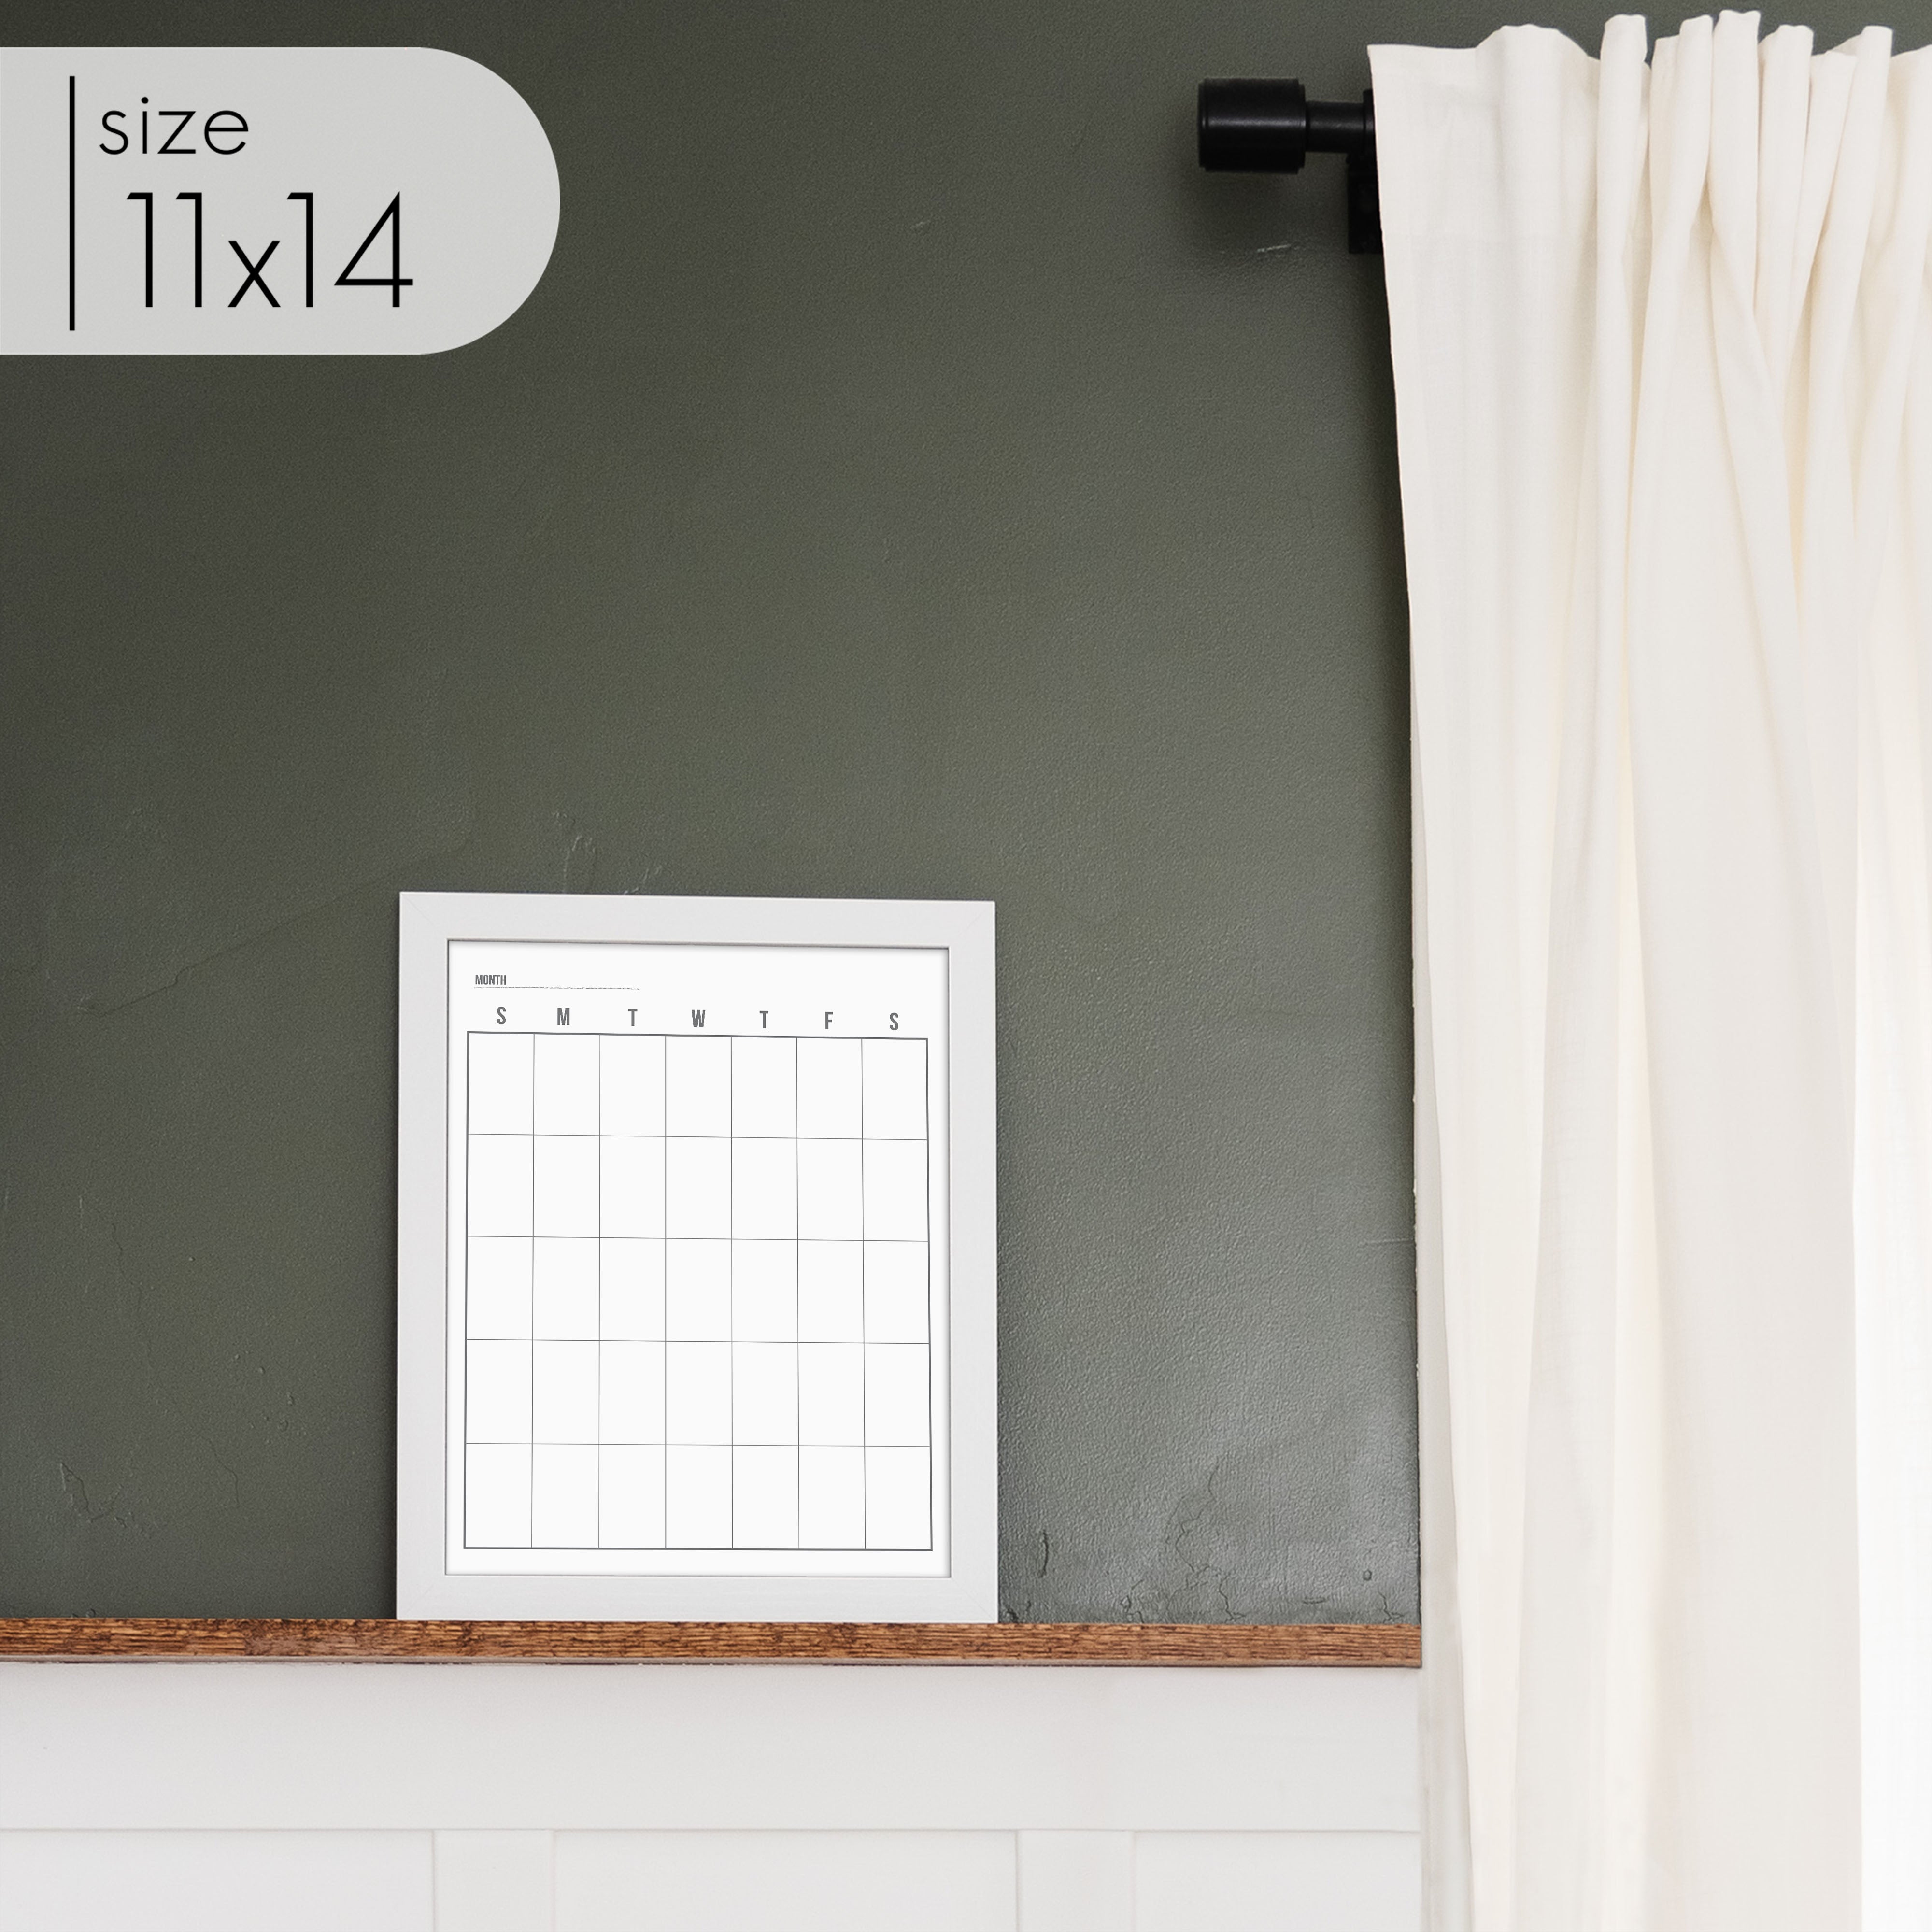 Monthly Framed Whiteboard Calendar | Vertical Dwyer